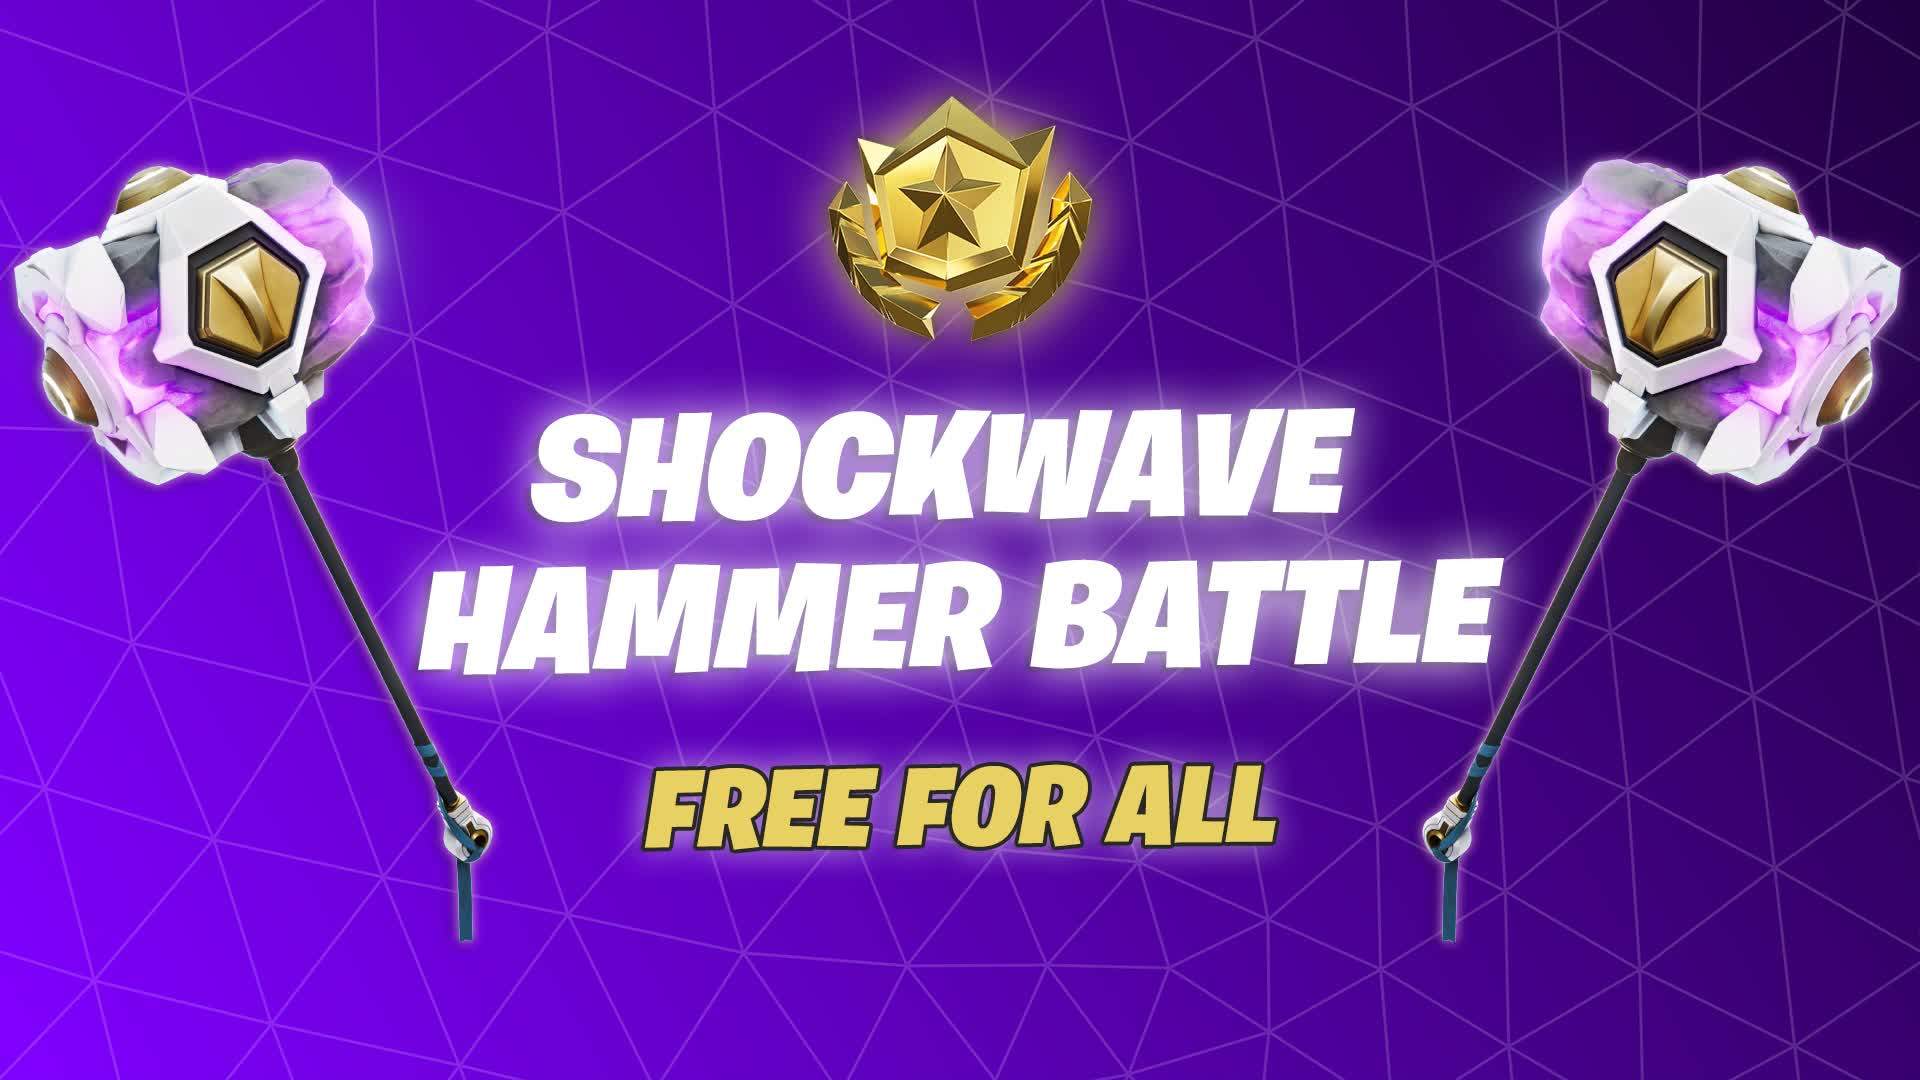 Shockwave Hammer - FREE FOR ALL